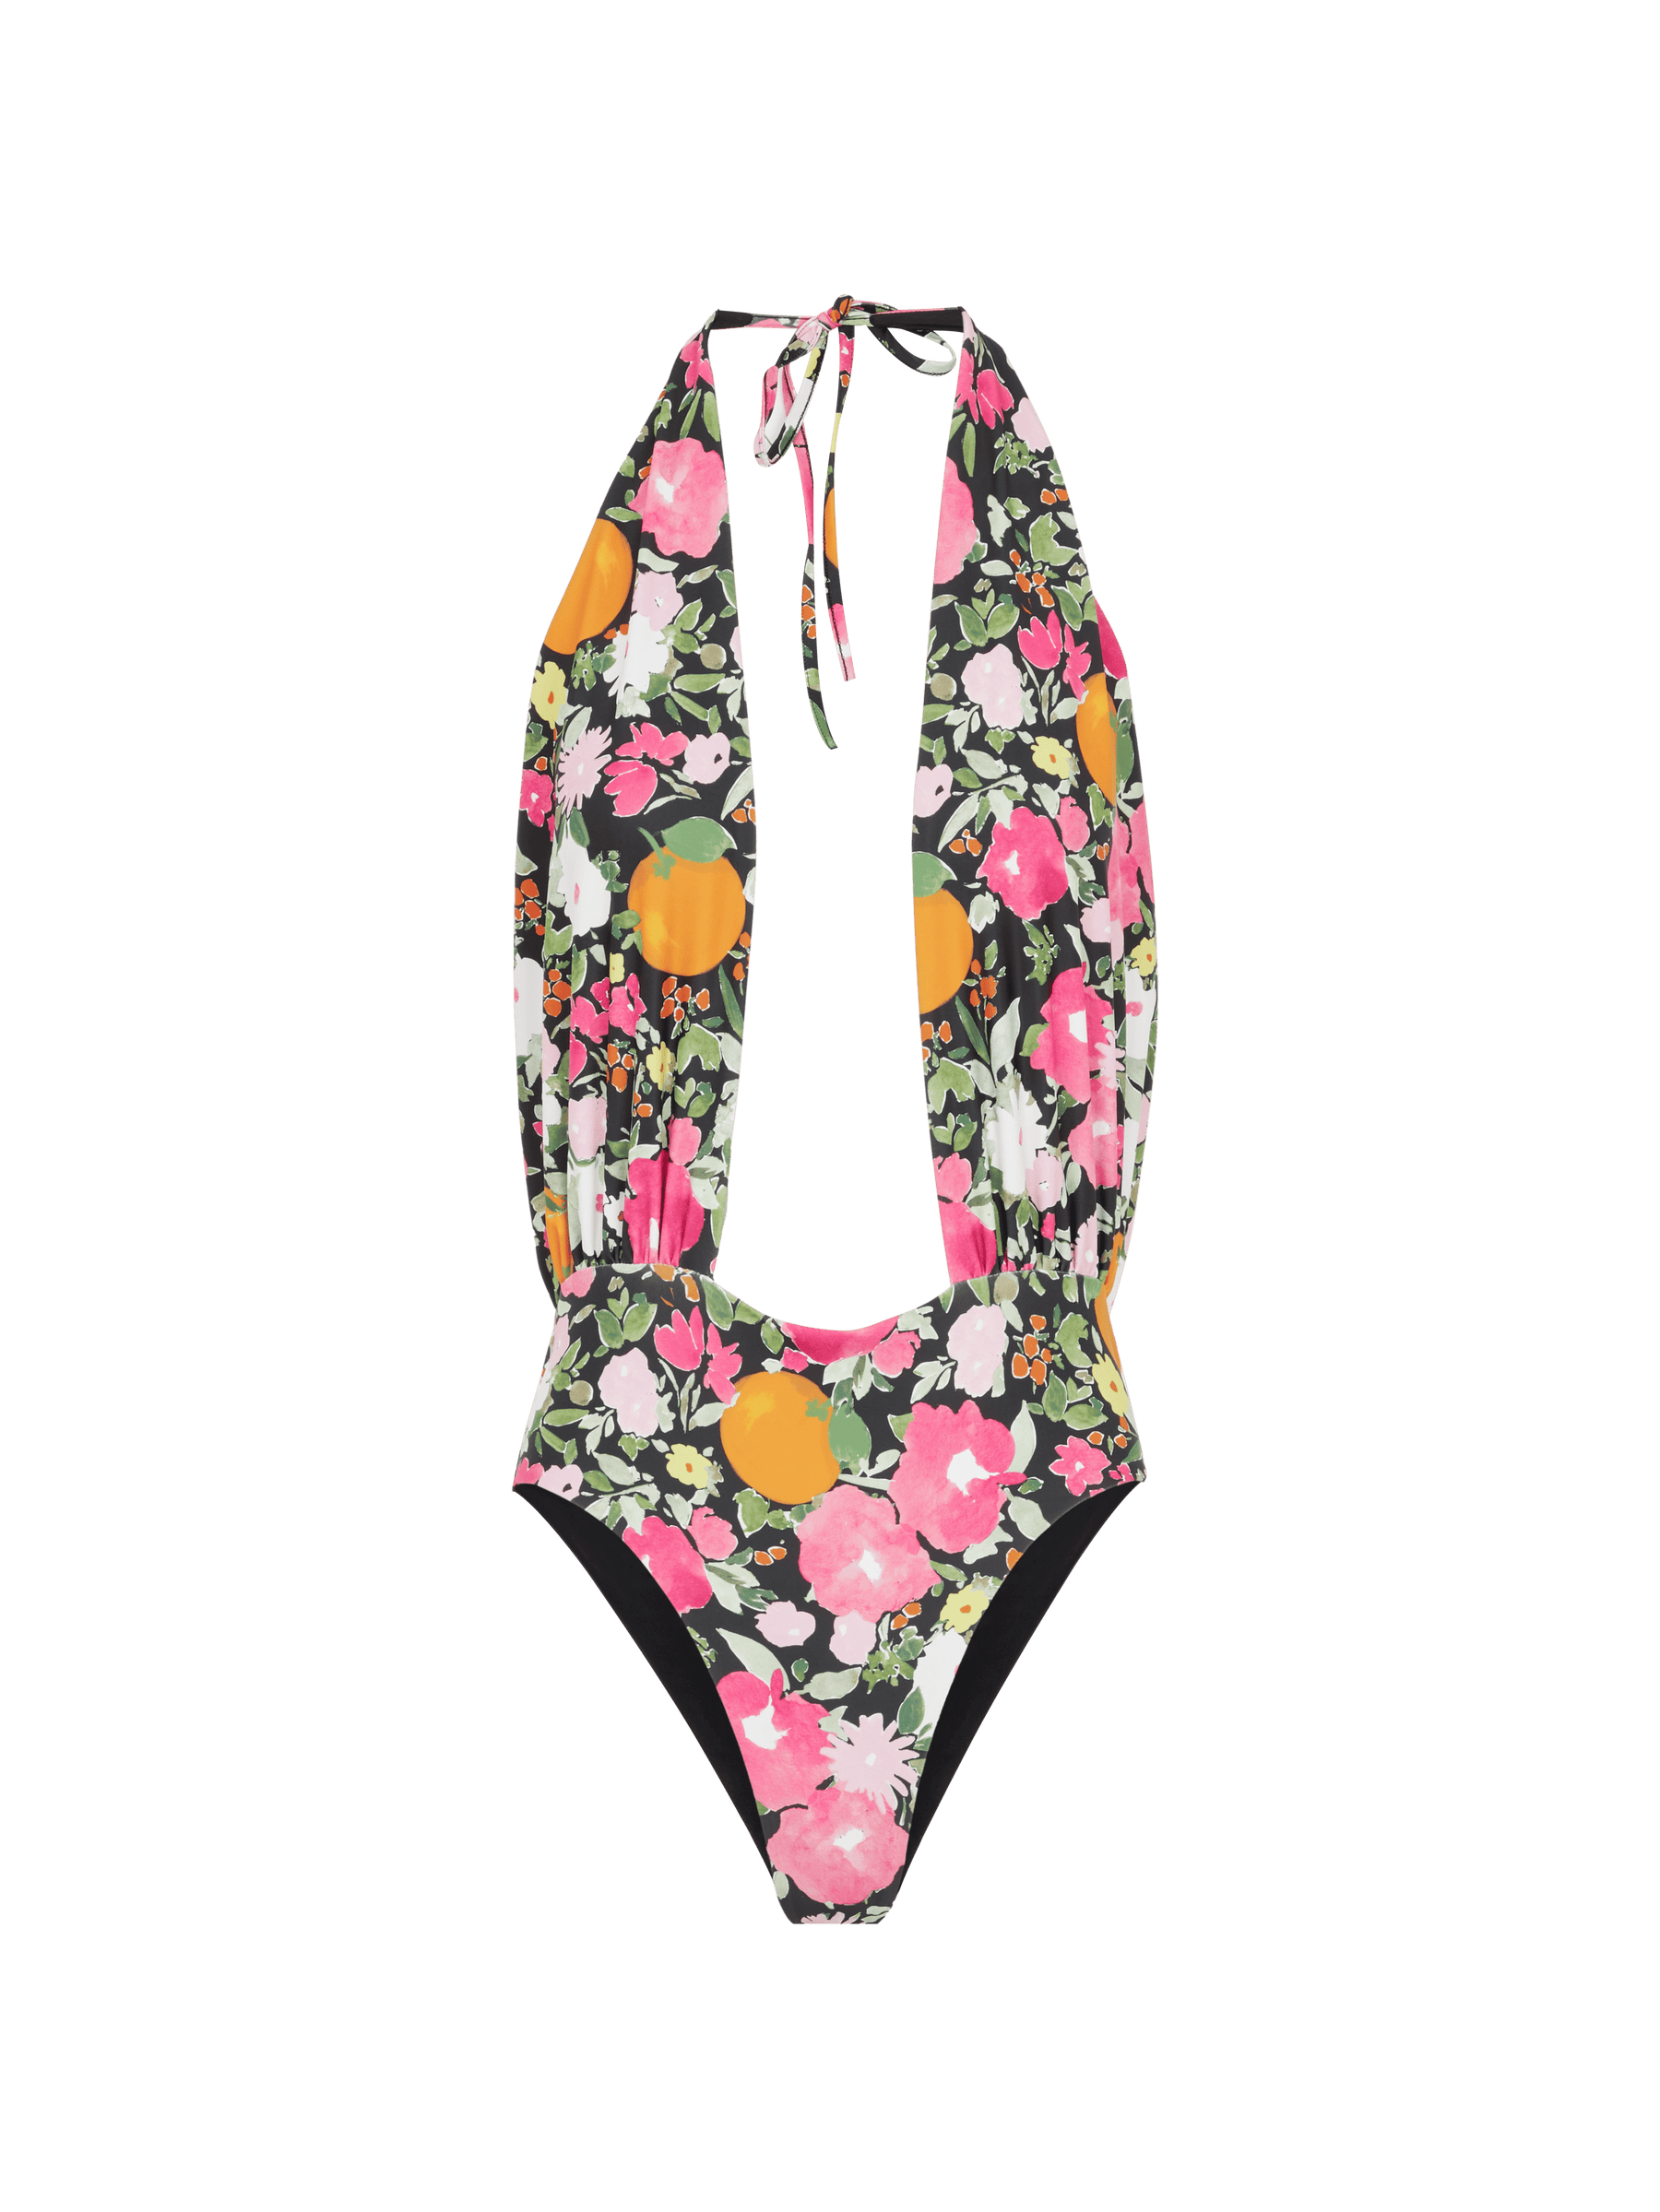 CASTA - 1 Piece Tie Print Swimsuit Immortelles Swimsuit Fête Impériale